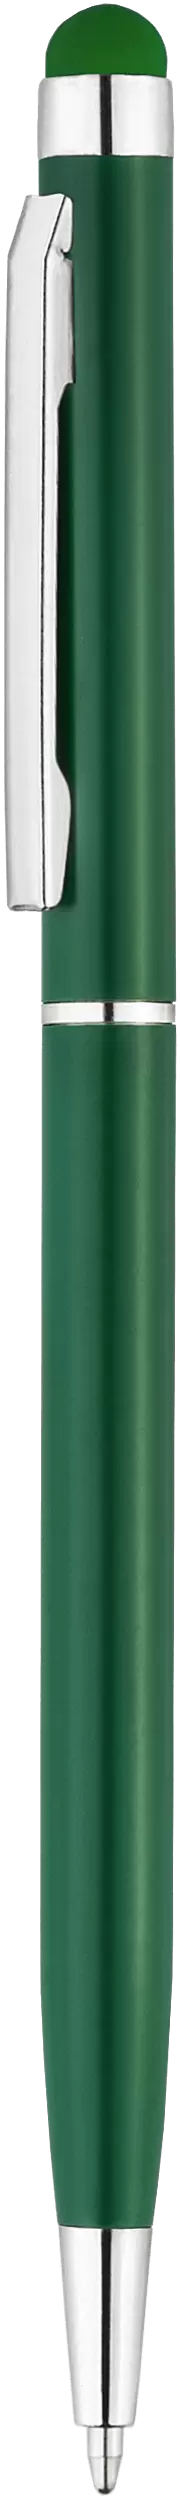 Ручка KENO NEW (Акция! 34.90 руб. от 300шт.) Зеленая 1117-02